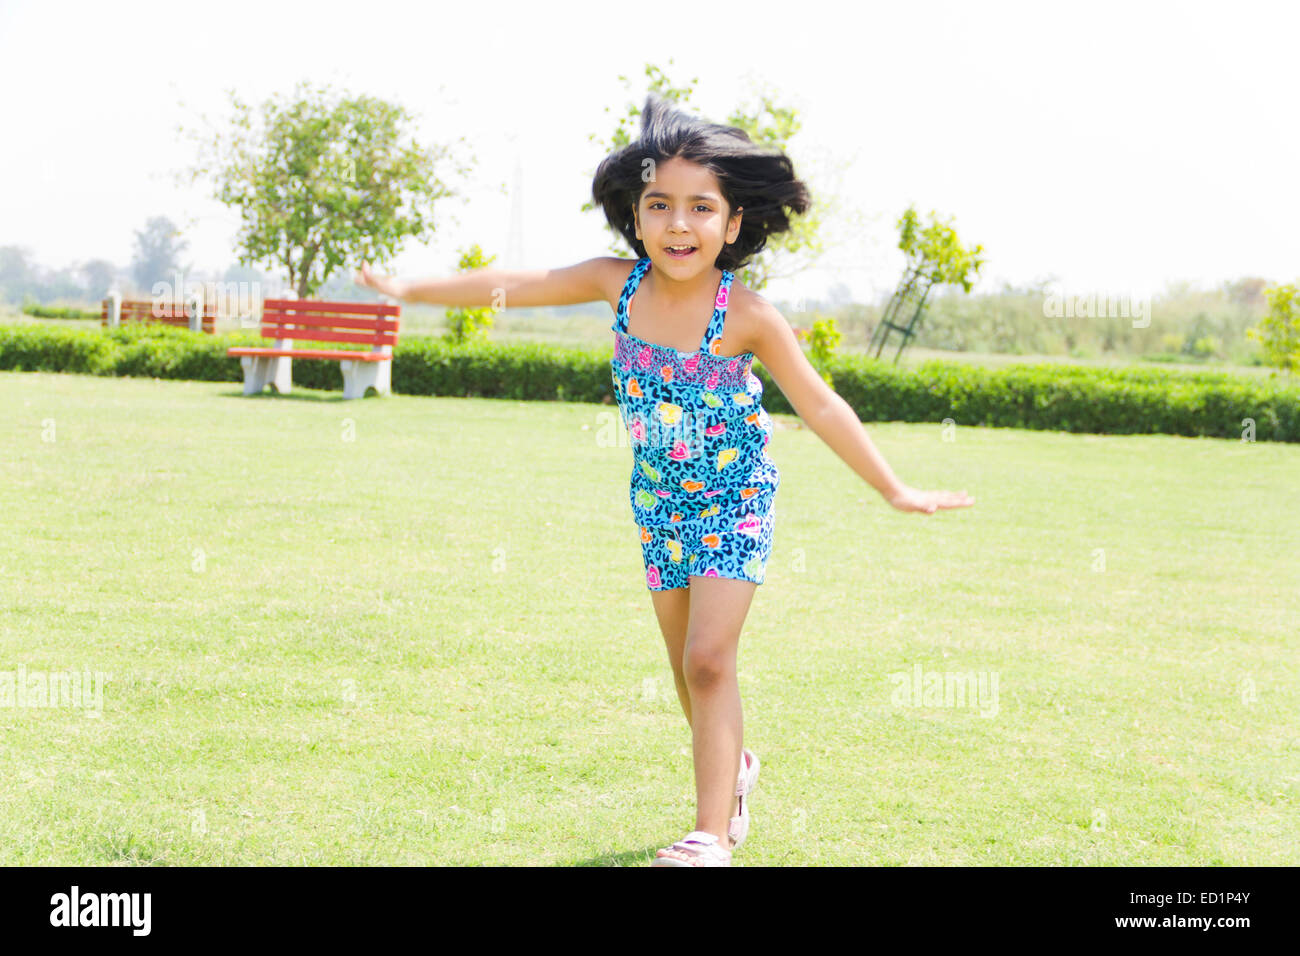 1 Indianer schönes Kind Mädchen Park Spaß Stockfoto